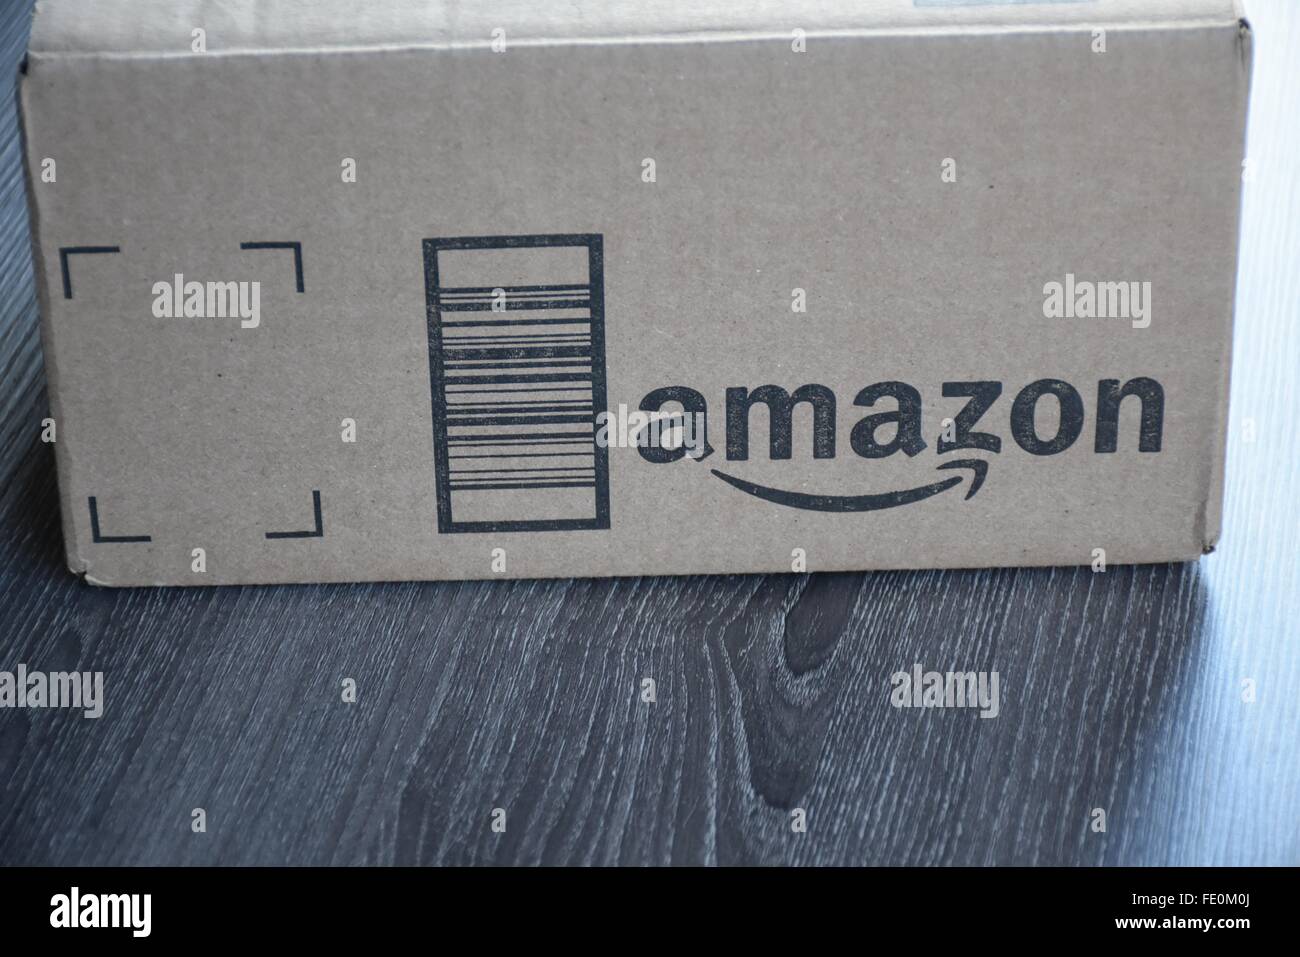 Amazon box consegnati ad un home Foto Stock